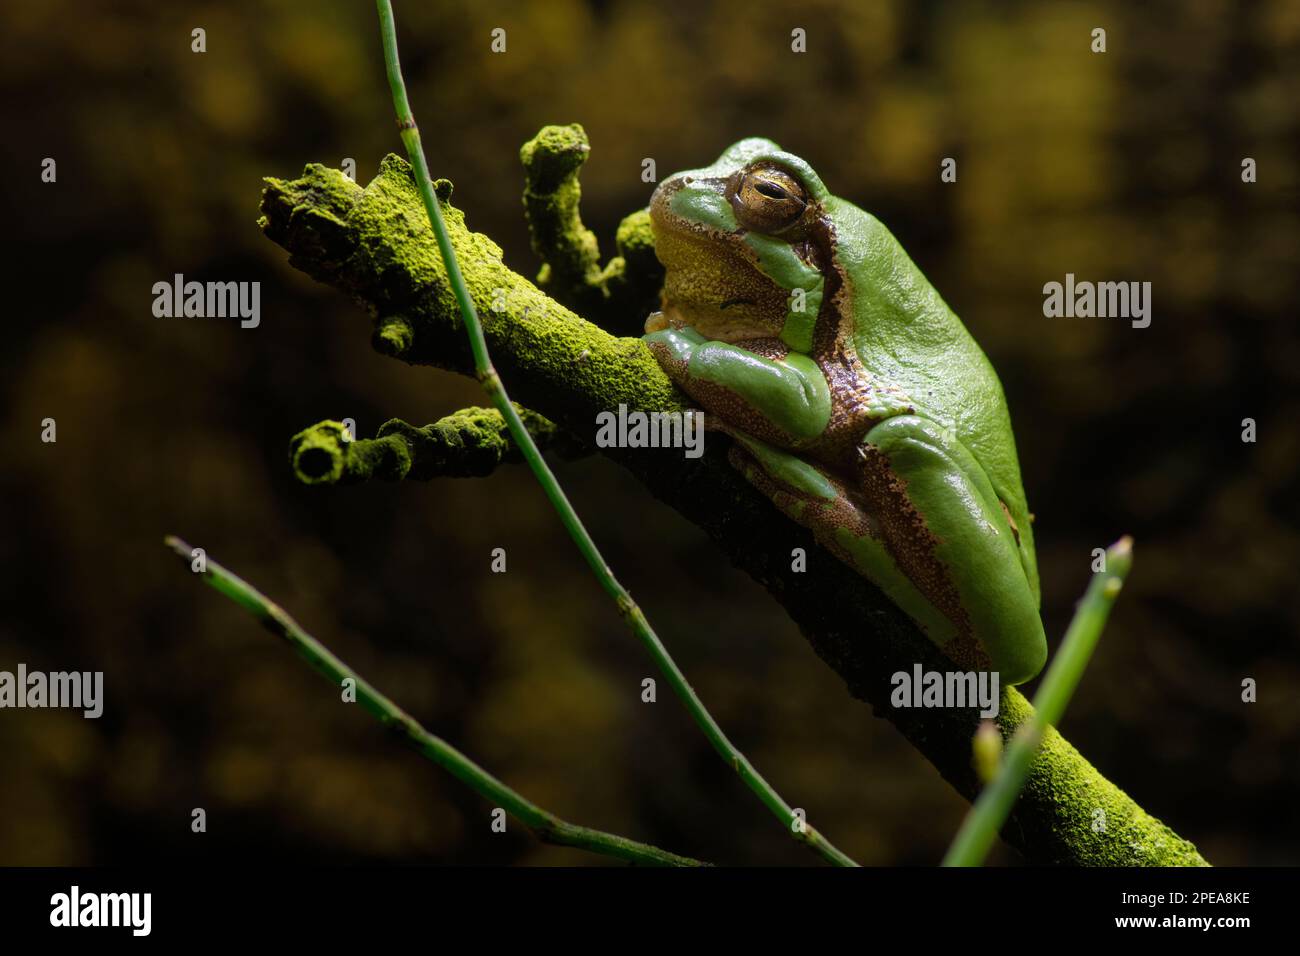 European Tree Frog - Hyla arborea  Frog on stick Stock Photo